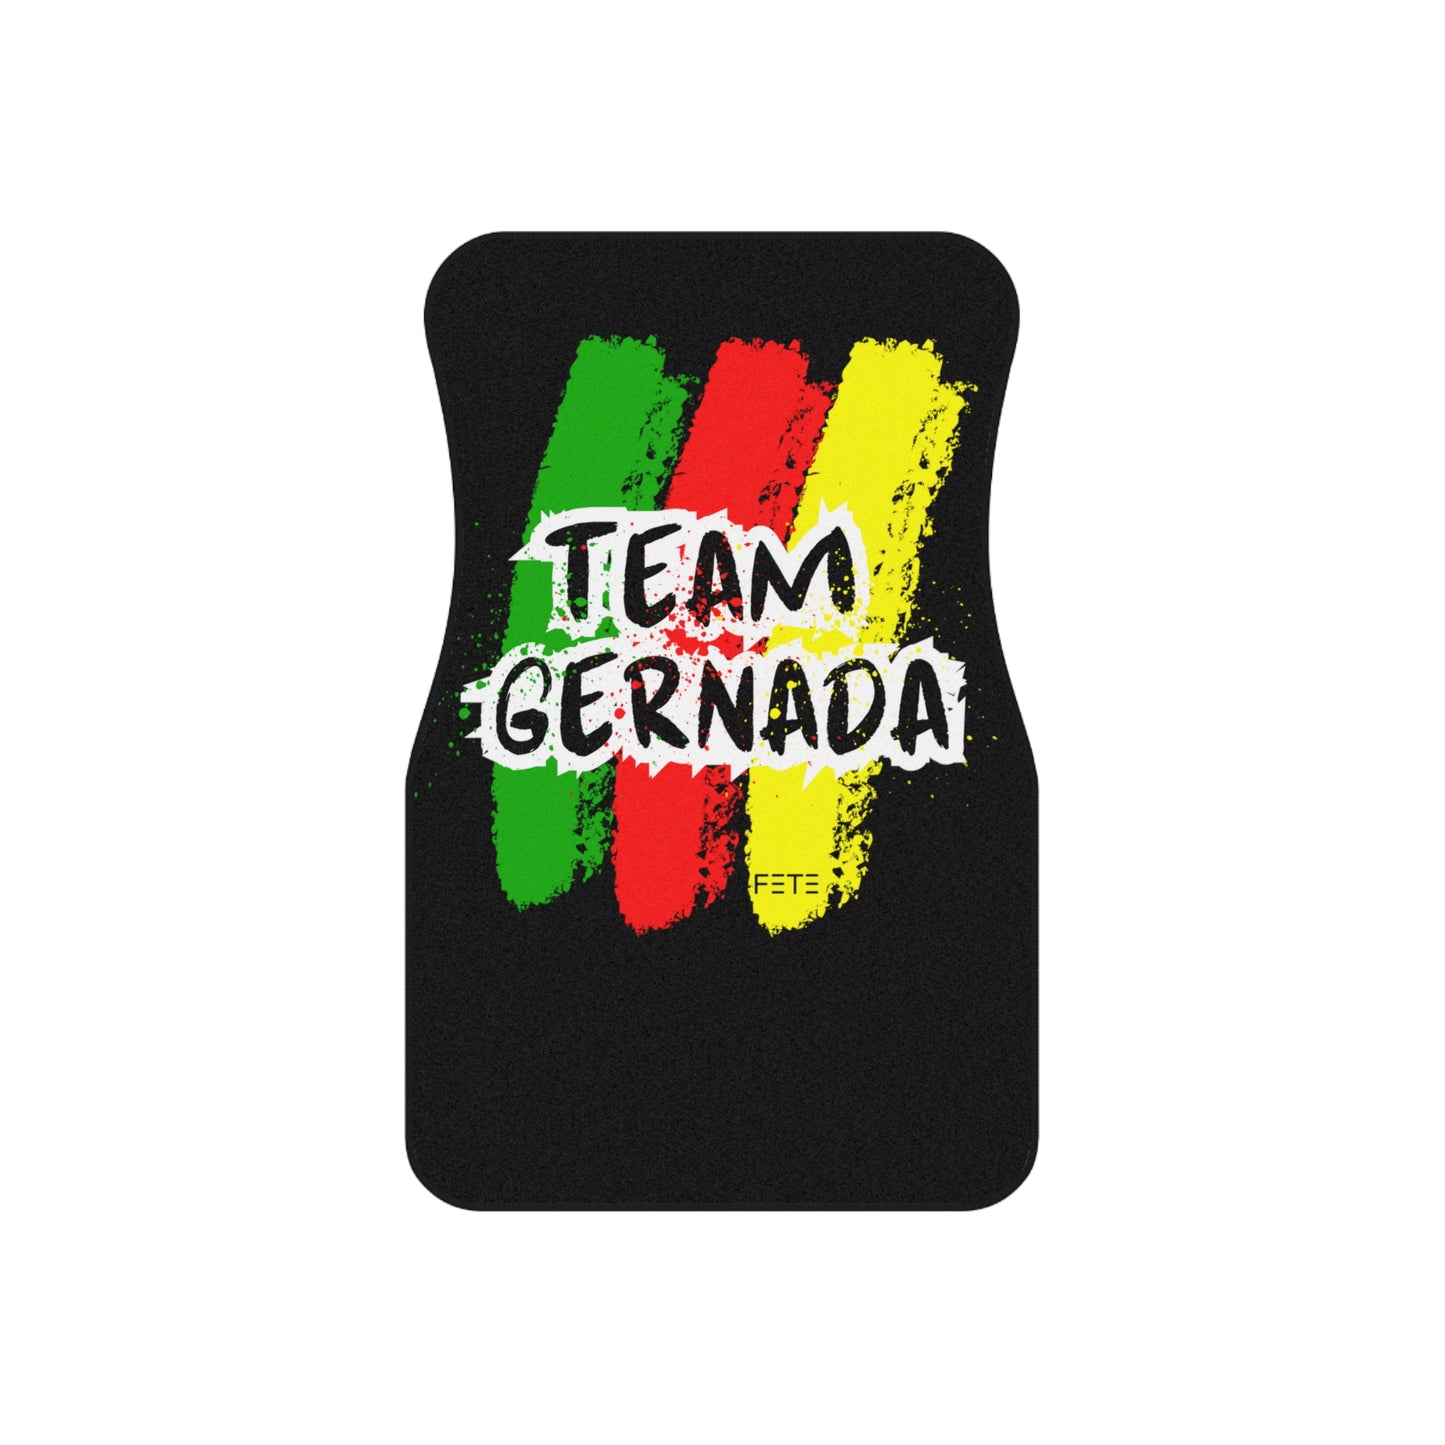 Team Grenada Car Mats (Set of 4)